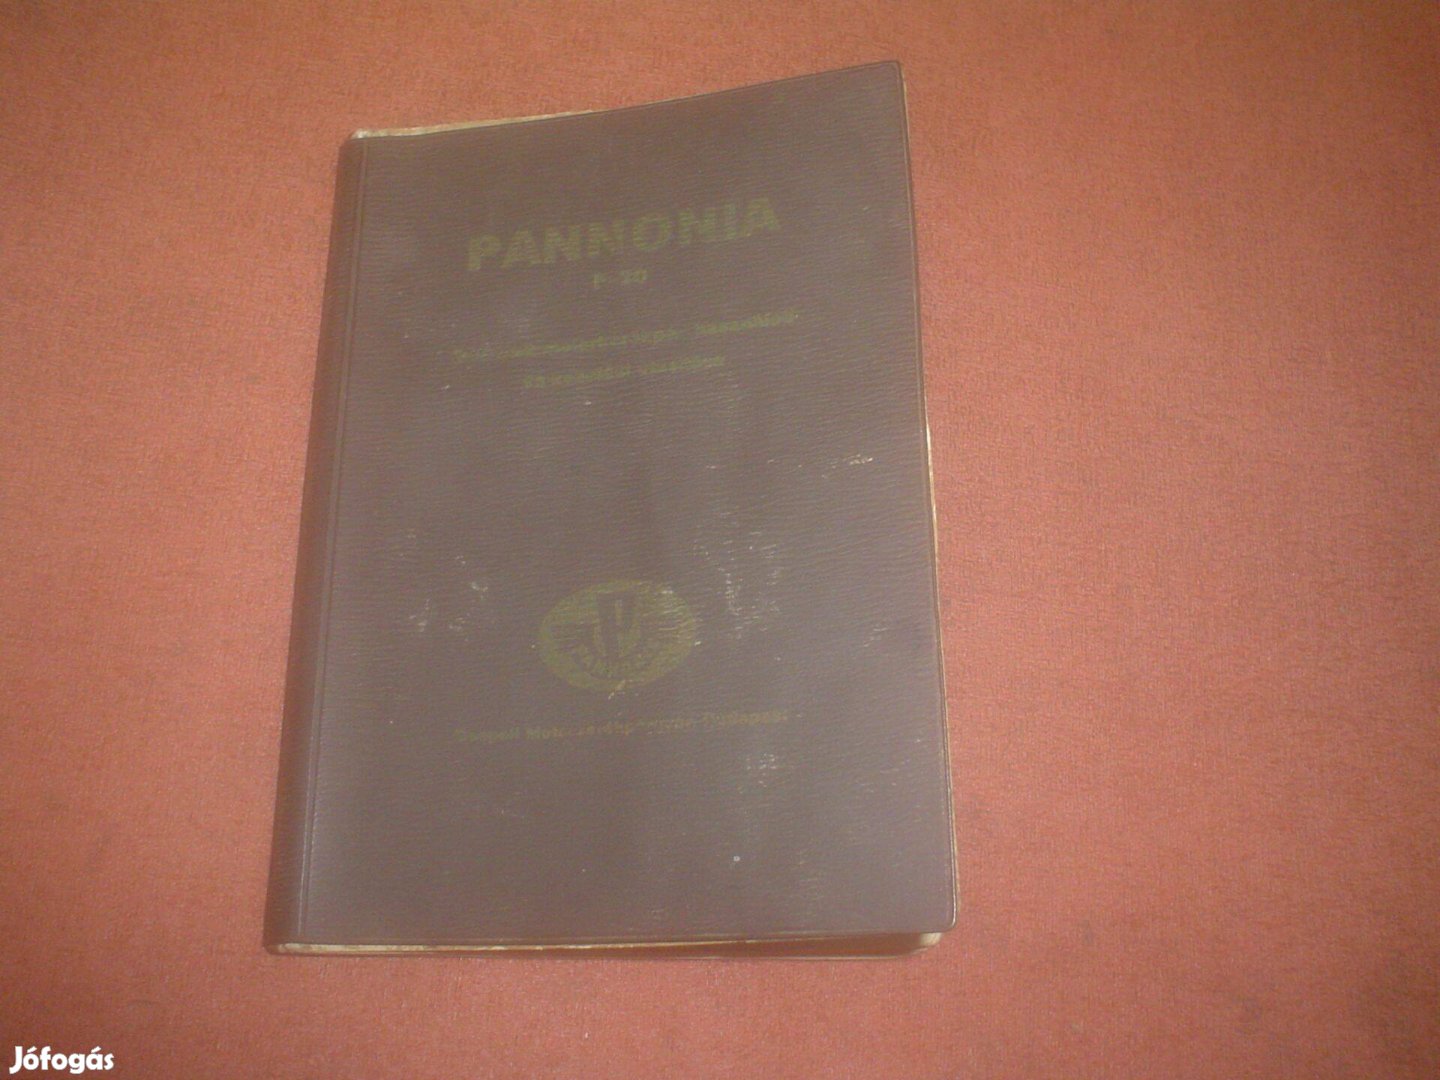 Pannonia P 20 kezelési könyv